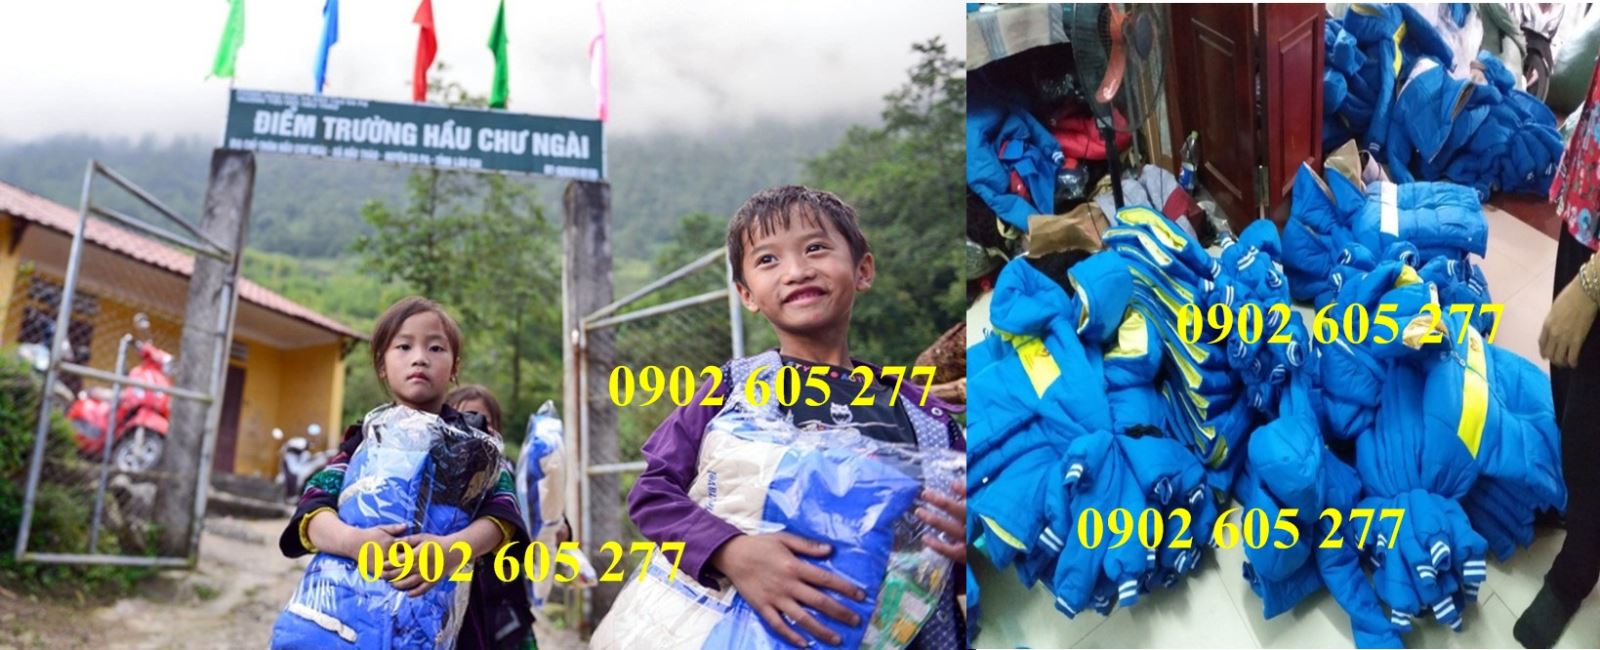 Niềm vui cho trẻ em khó khăn – chương trình trao áo ấm từ thiện tại Gia Lai